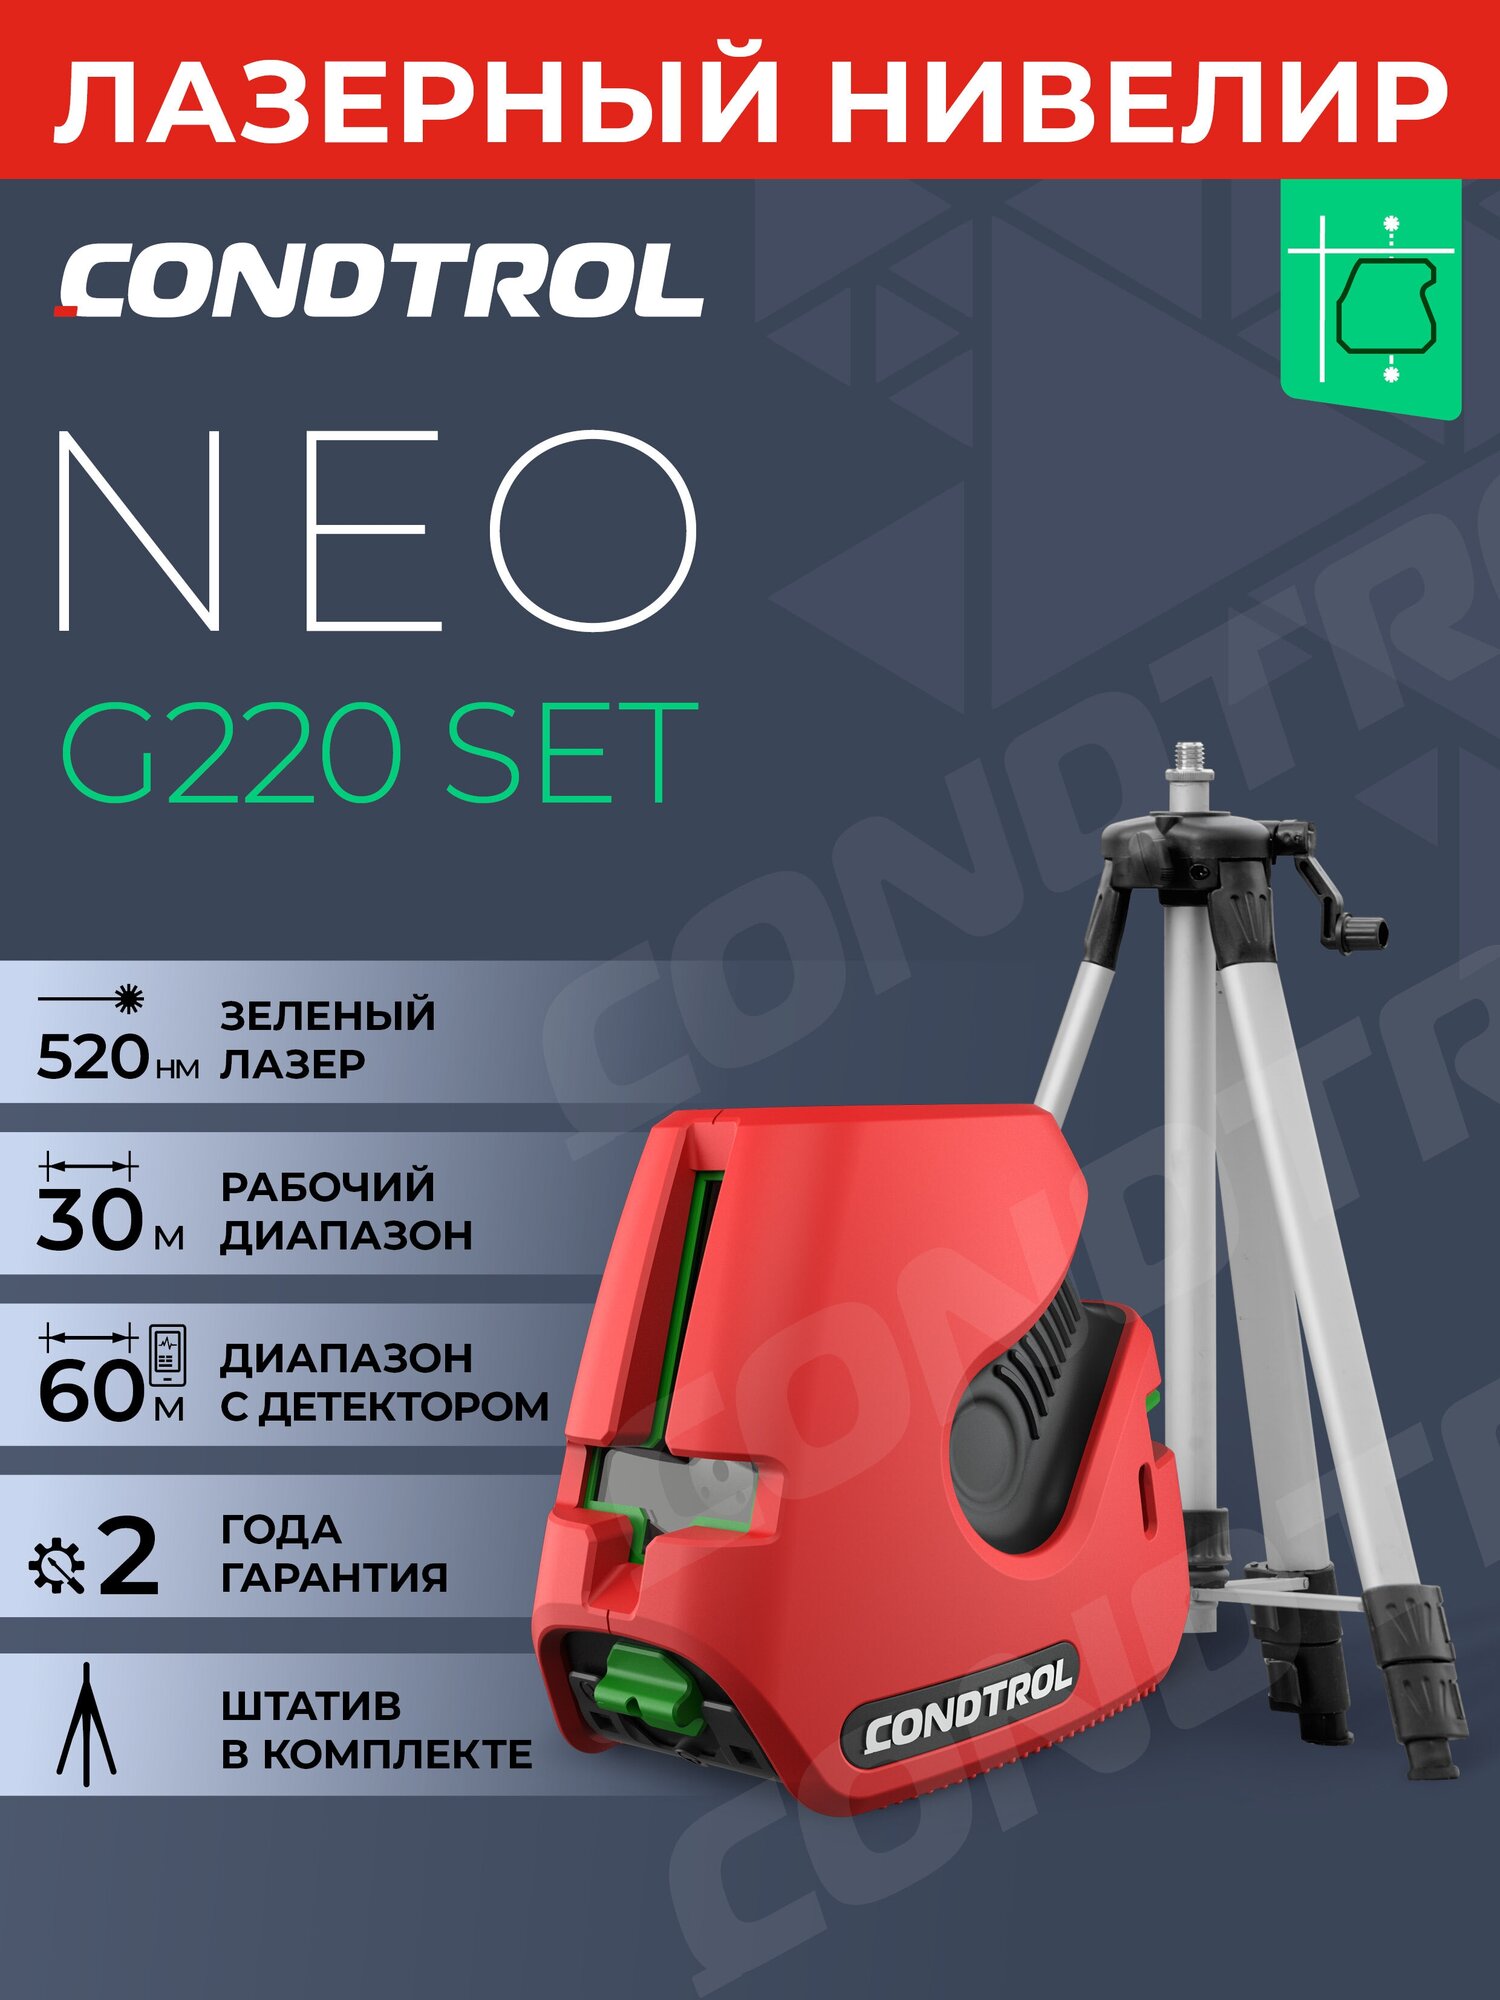 Лазерный нивелир Condtrol NEO G 220 set